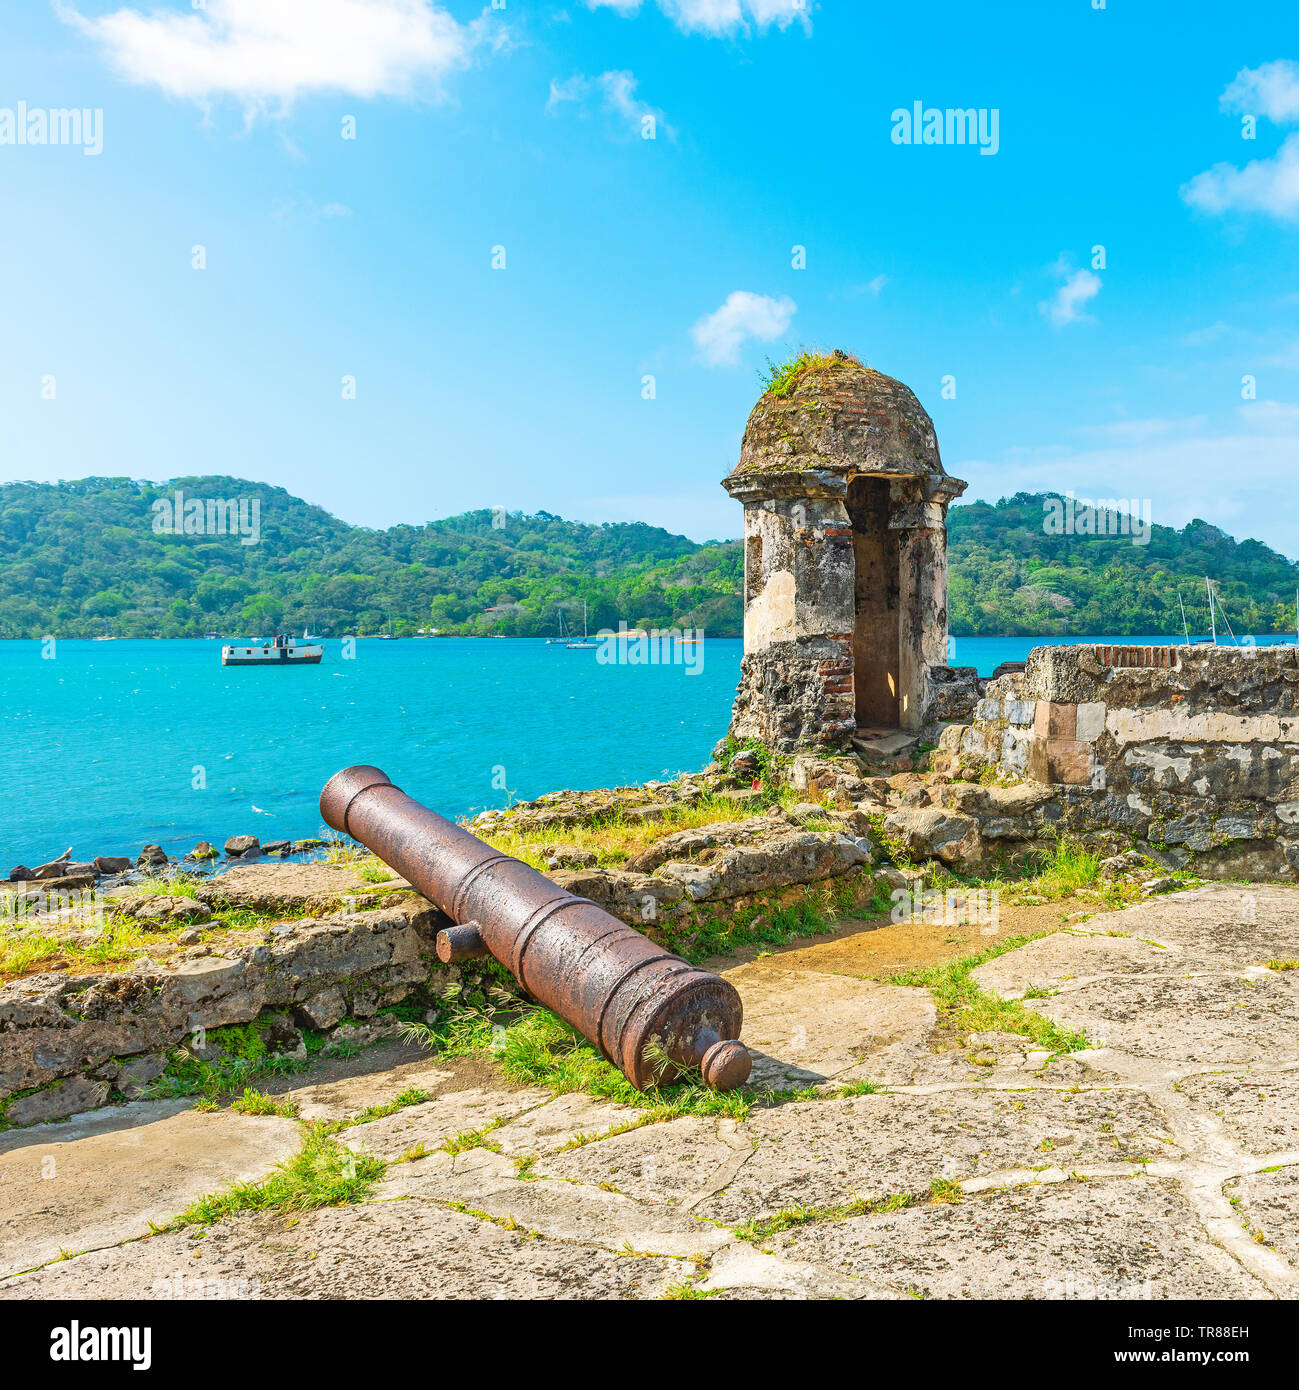 Spanische Festung mit Turm und Kanone schießen über Portobelo Bucht durch das Karibische Meer Die spanischen Zollbehörden Übergriffe durch Piraten, Panama zu schützen. Stockfoto